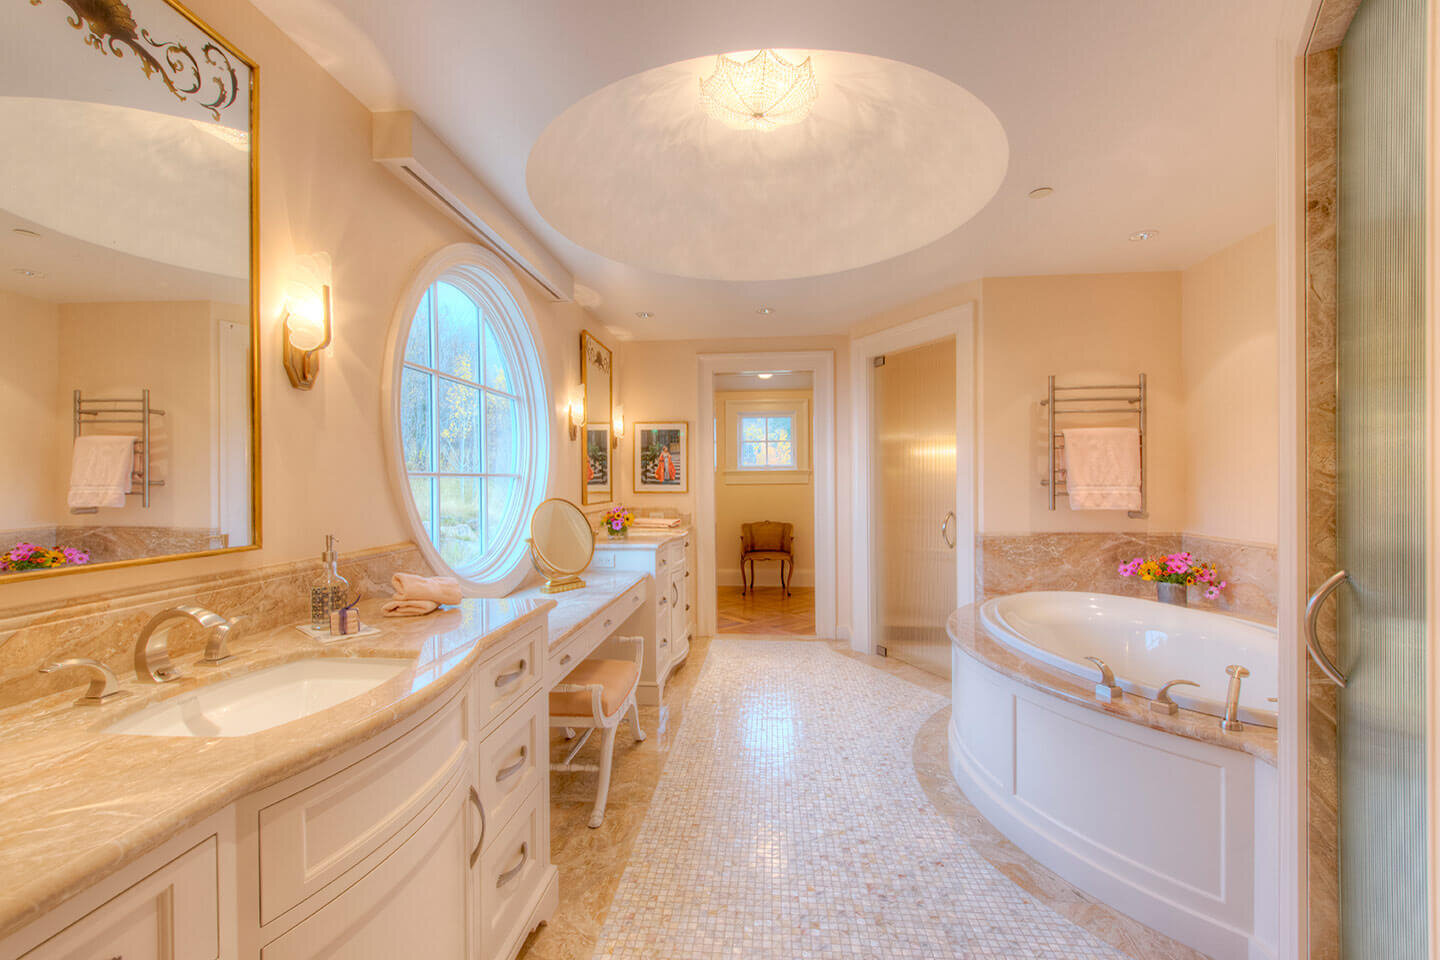 古典风格的浴室与象牙色调色板